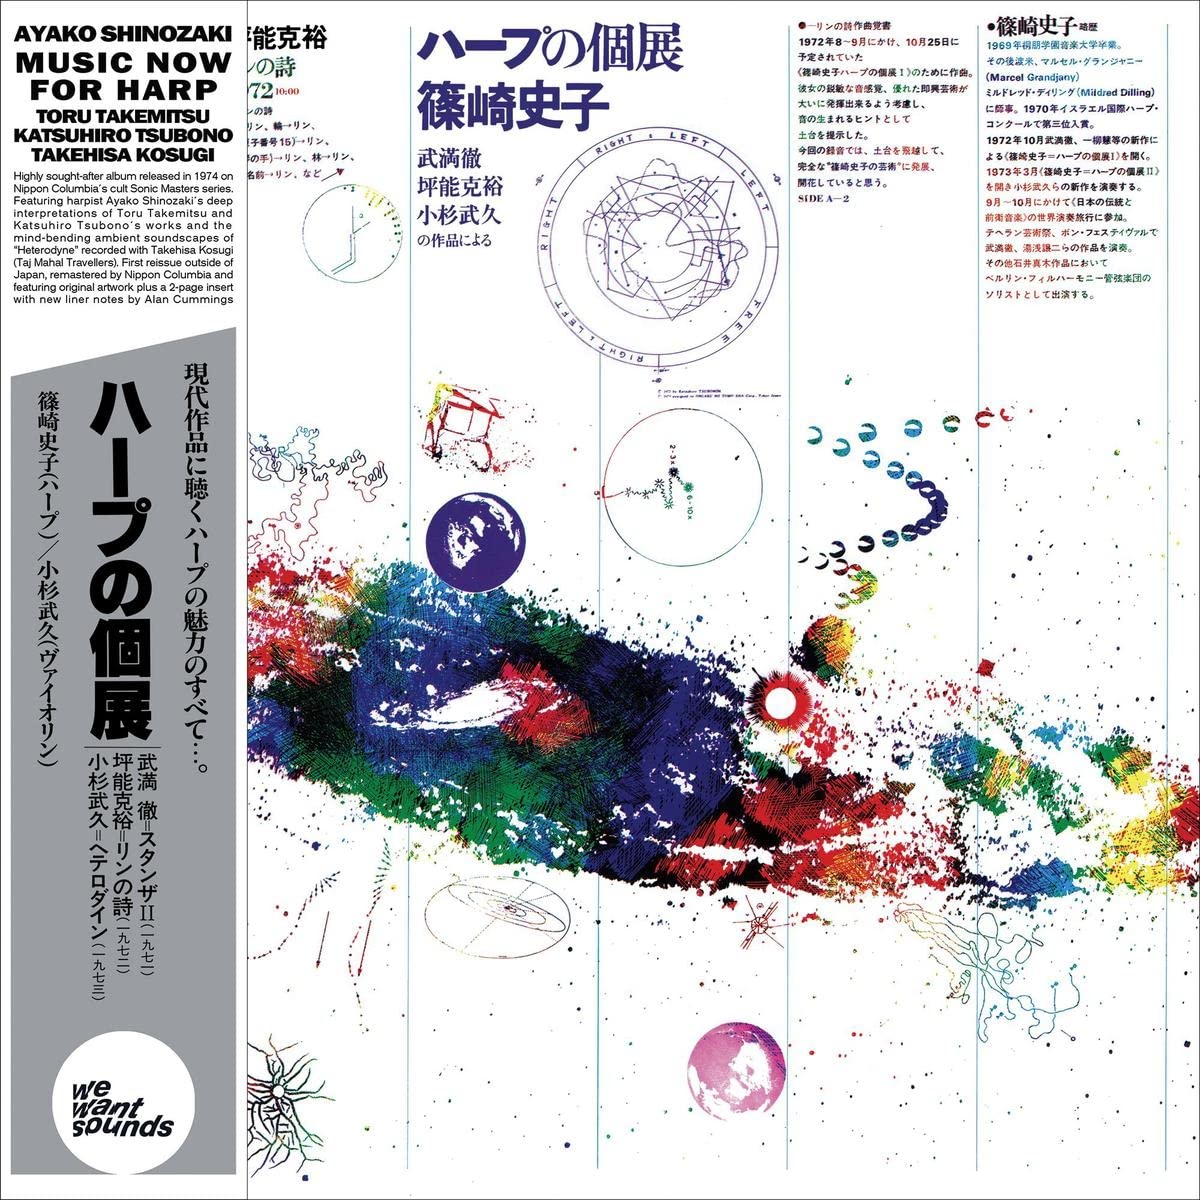 AYAKO SHINOZAKI -  MUSIC NOW FOR HARP Vinyl LP